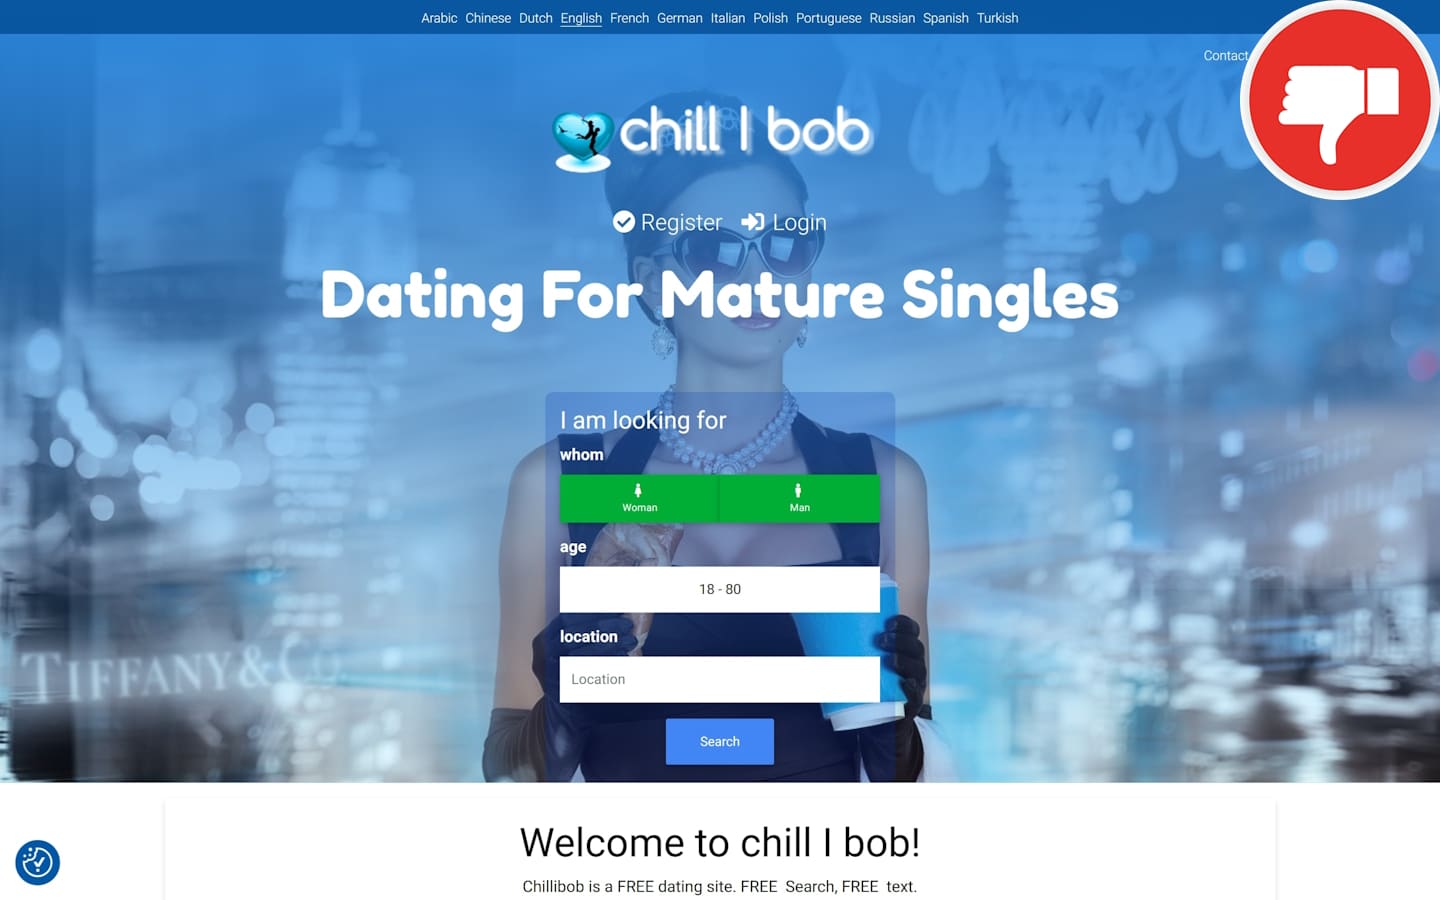 Review ChilliBob.com scam experience